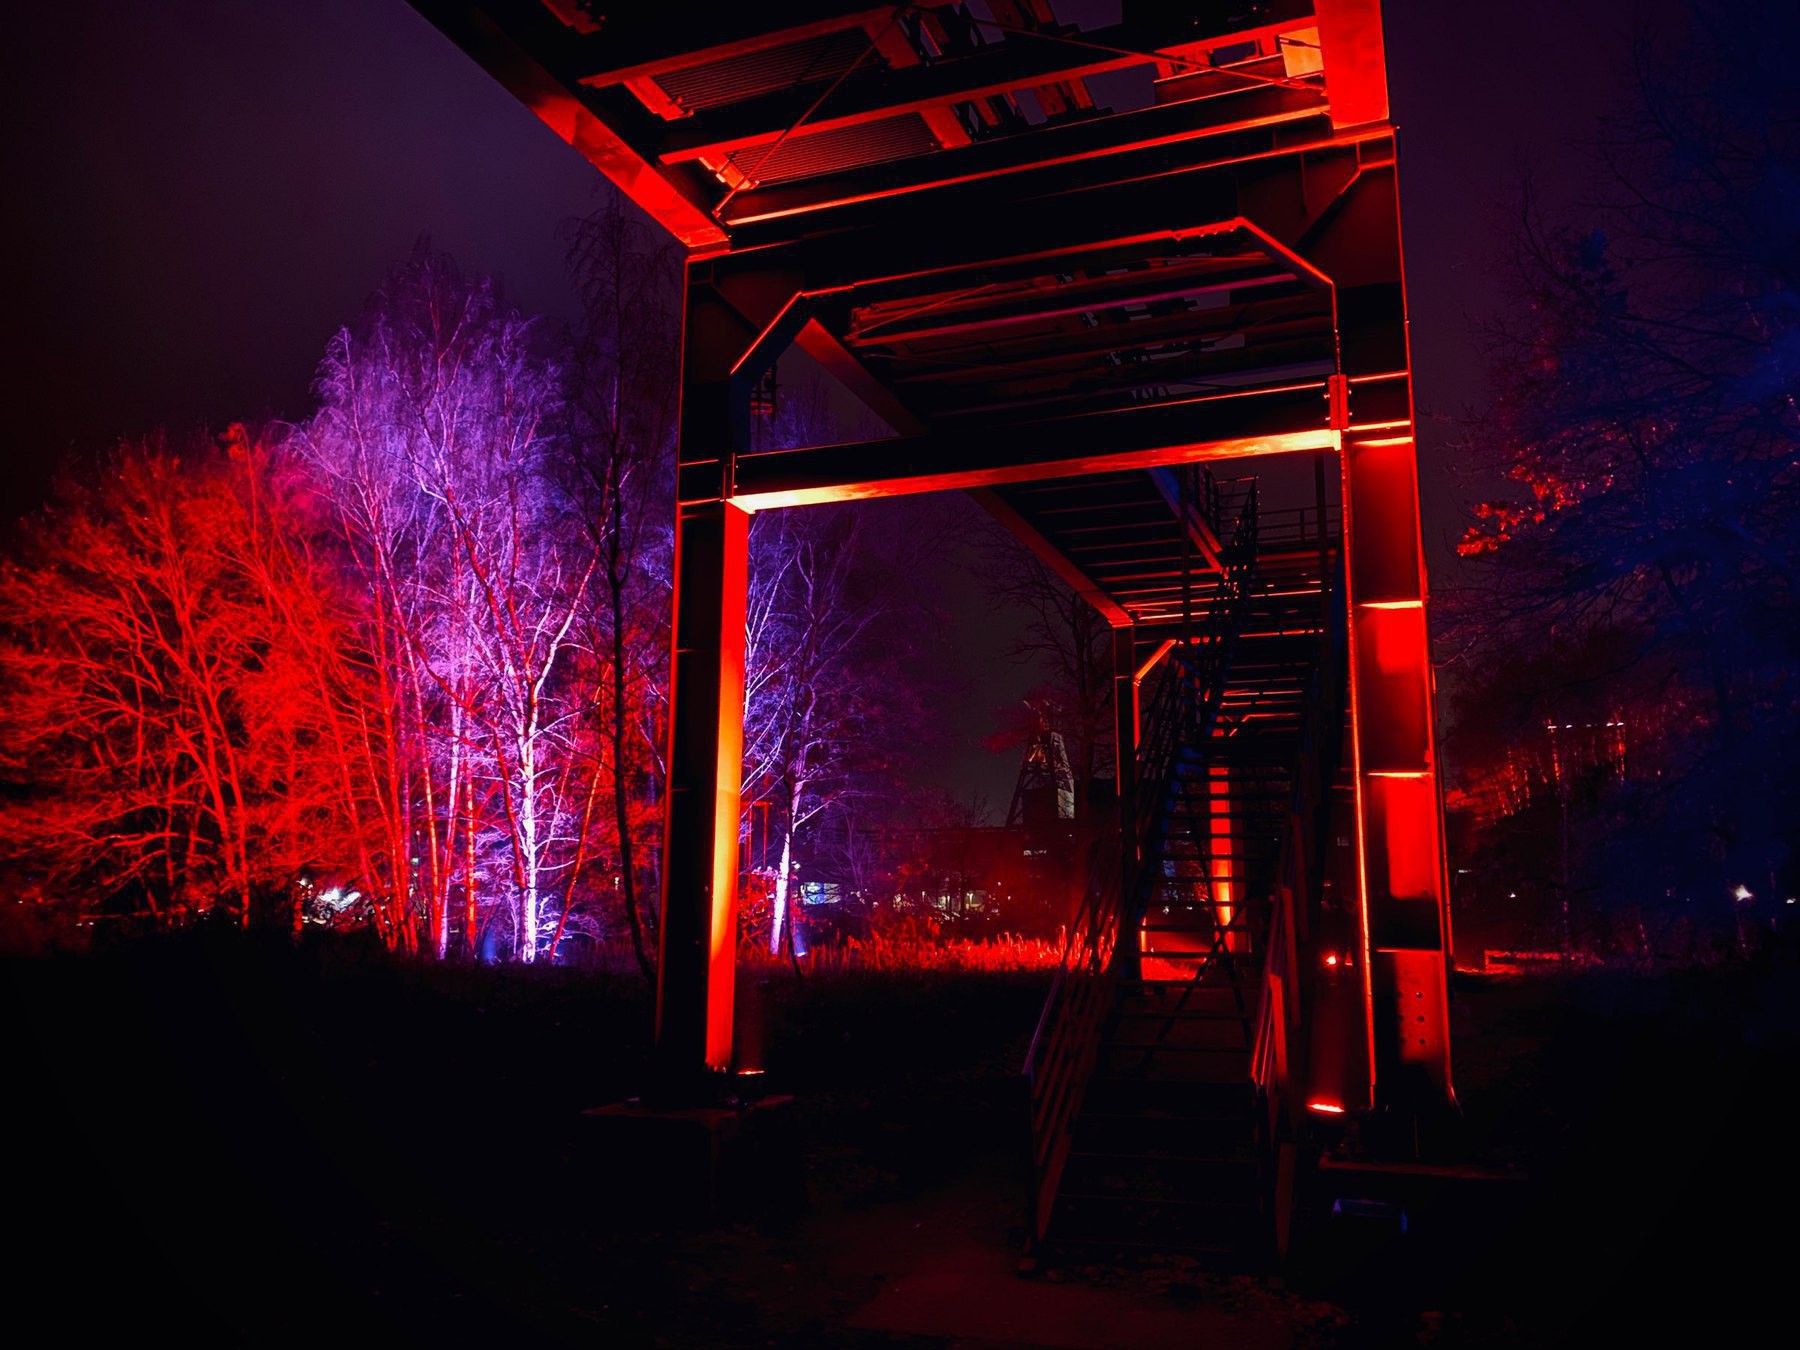 Light installation at Zeche Zollverein, Essen, Germany